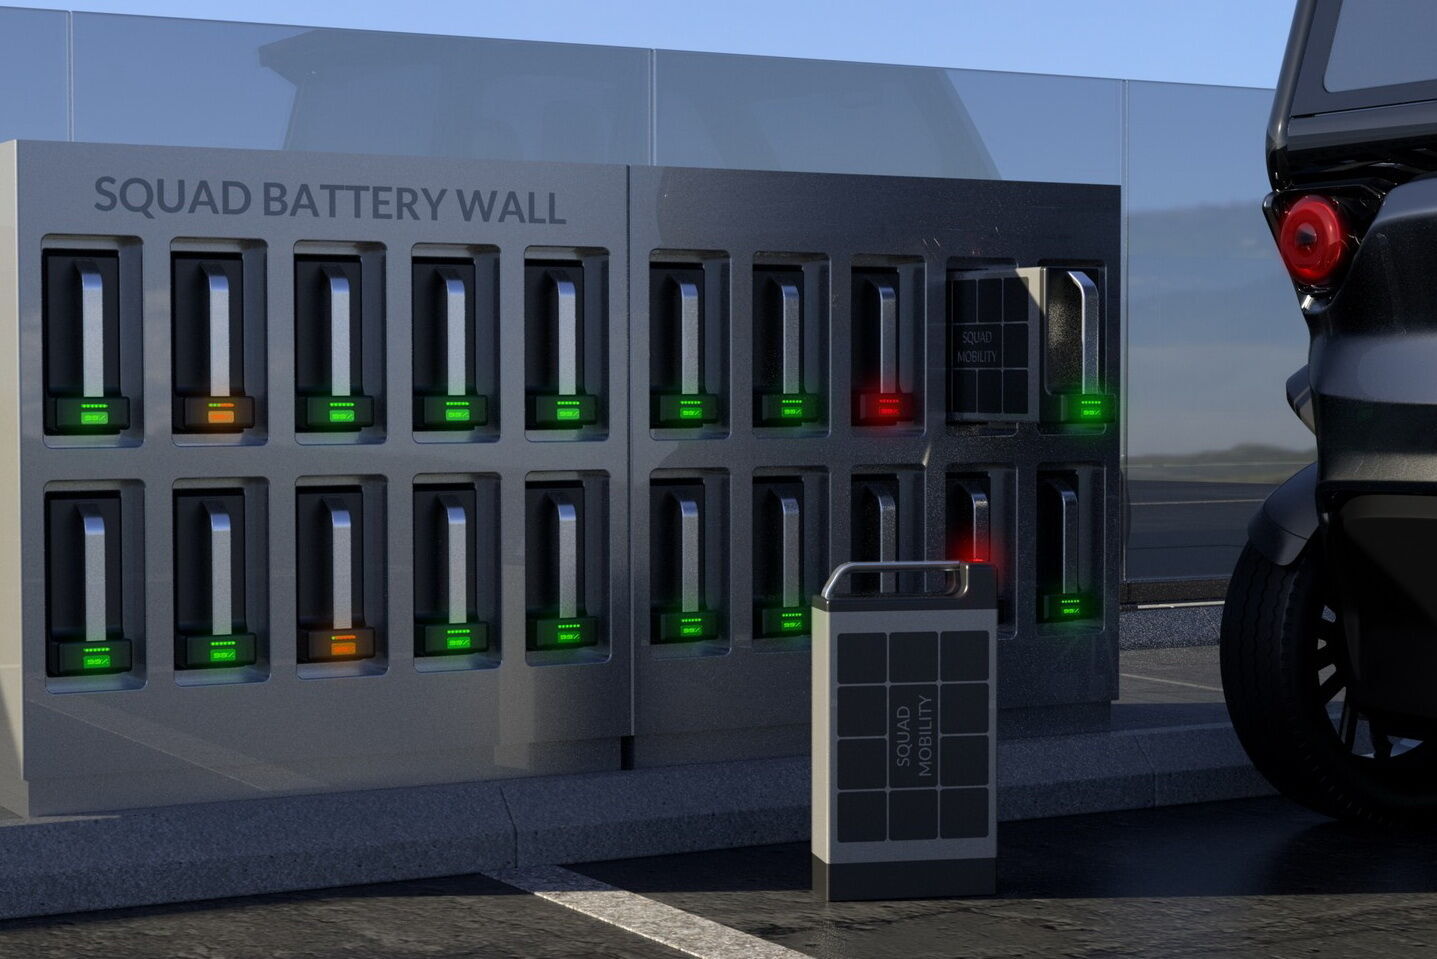 Съемную батарею можно будет обменять на полностью заряженную в специальных центрах или зарядить самостоятельно от бытовой сети